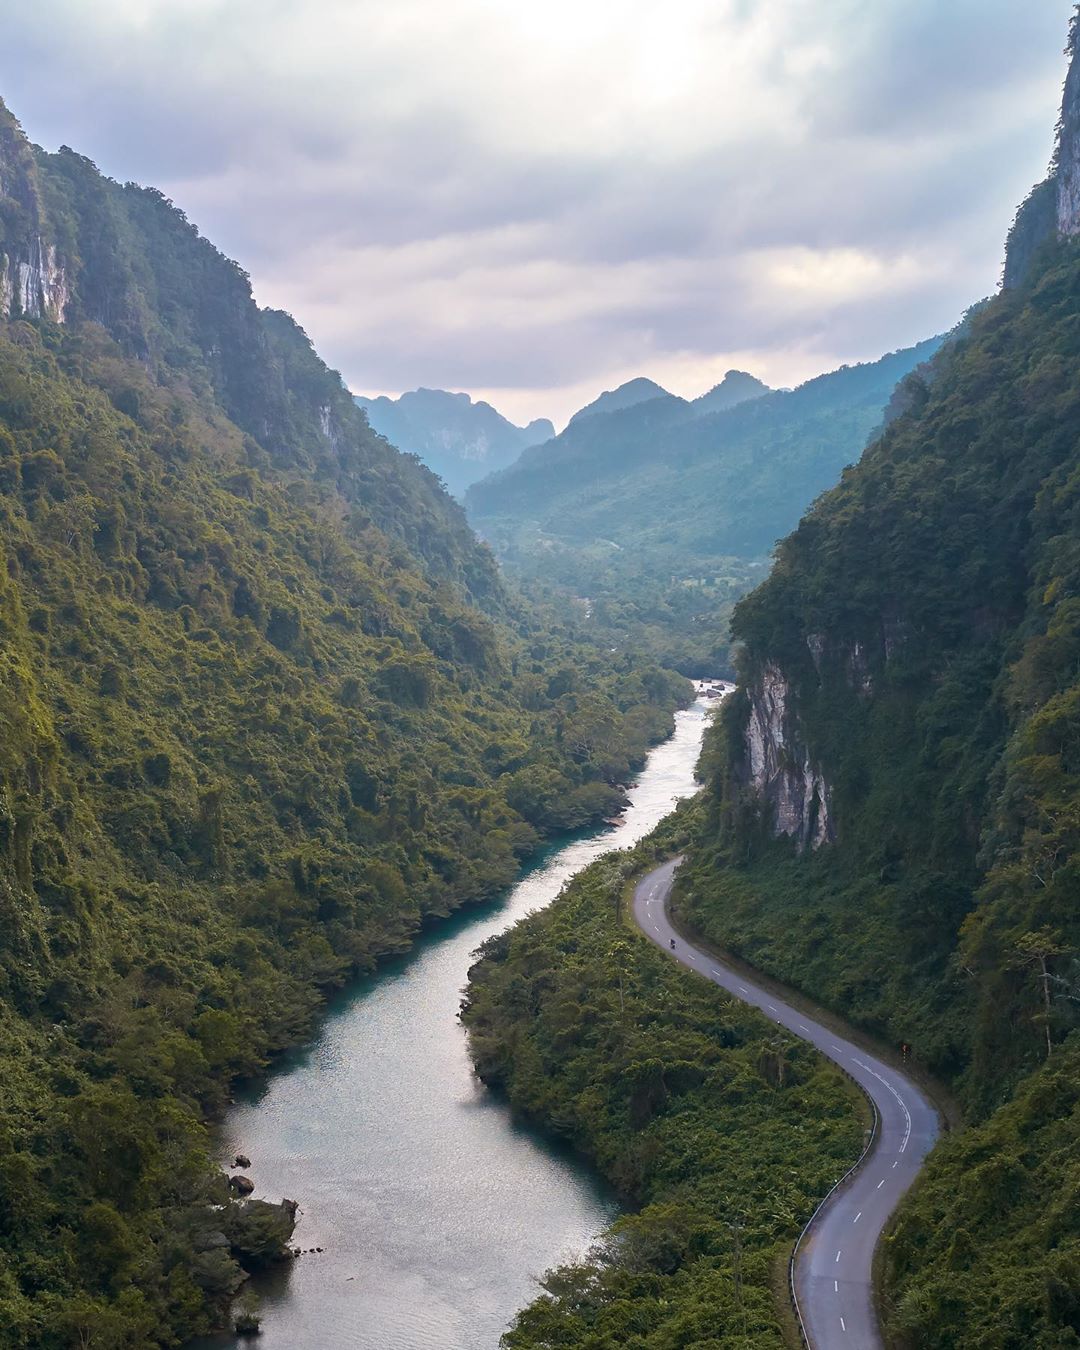 Có một “dòng suối ngọc bích” ở Quảng Bình, nước mát hơn bình thường, bắt nguồn từ tầng địa chất triệu năm tuổi - Ảnh 2.